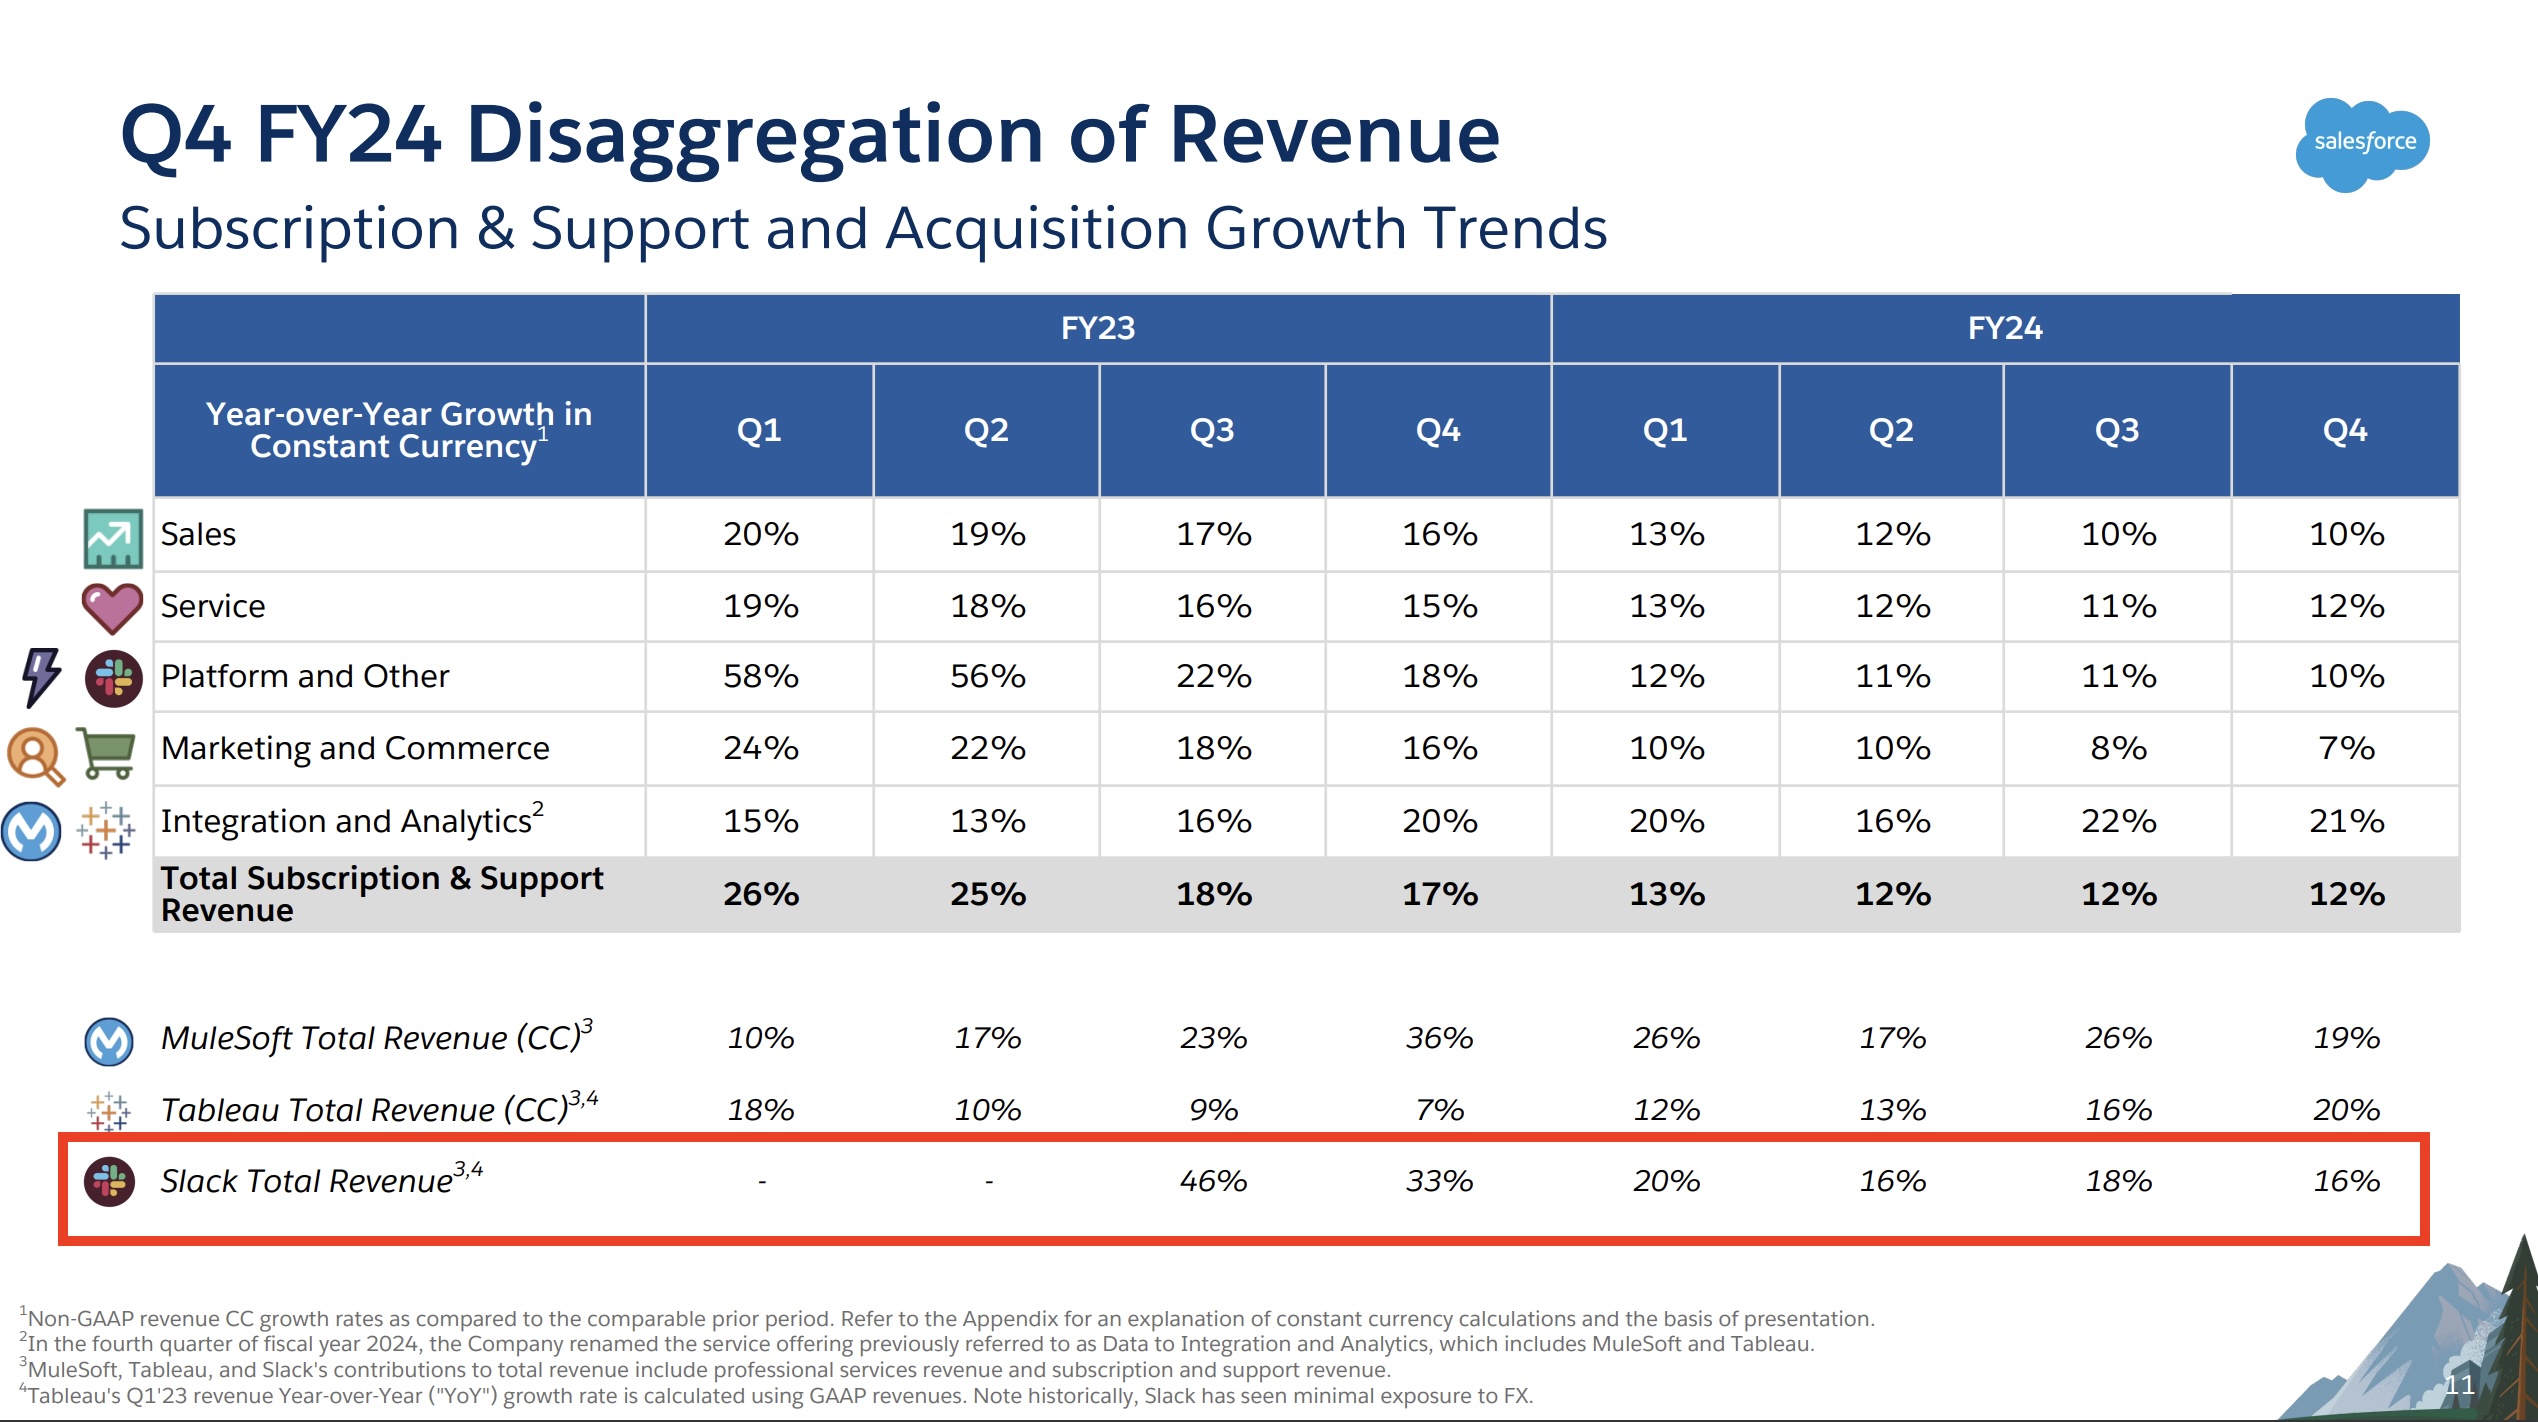 Diapositiva de Salesforce de la presentación del informe de ganancias del cuarto trimestre de 2024 que muestra que el crecimiento de Slack cayó del 46 % al 33 % al 20 % al 16 % al 18 % y nuevamente al 15 % del tercer trimestre de 2023 al cuarto trimestre de 2024.